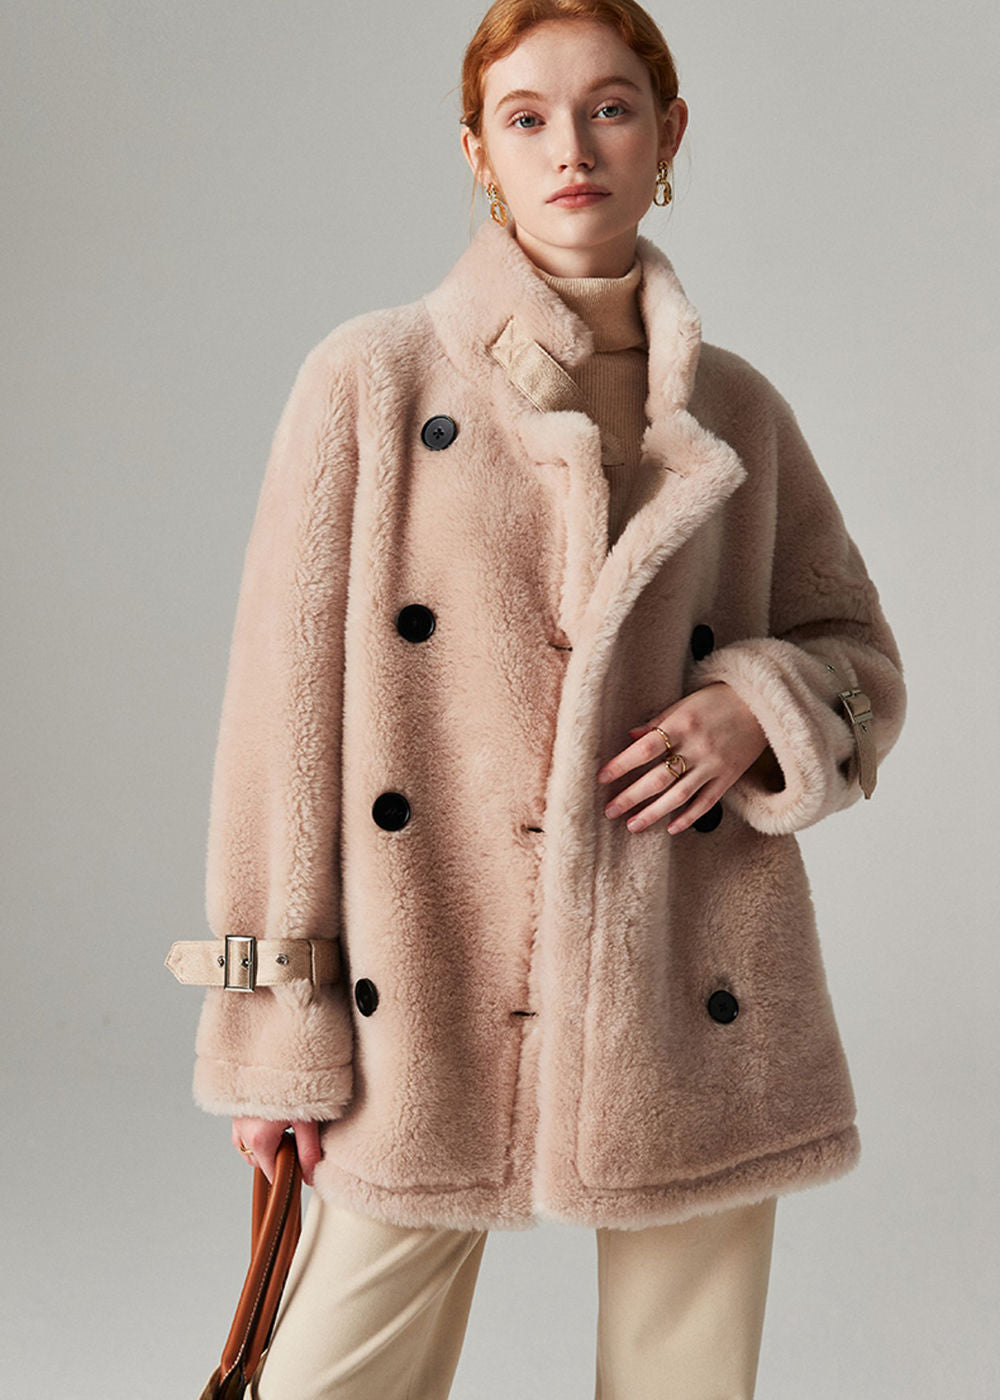 Vivian Seven Womens Winter Wool Fleece Coat